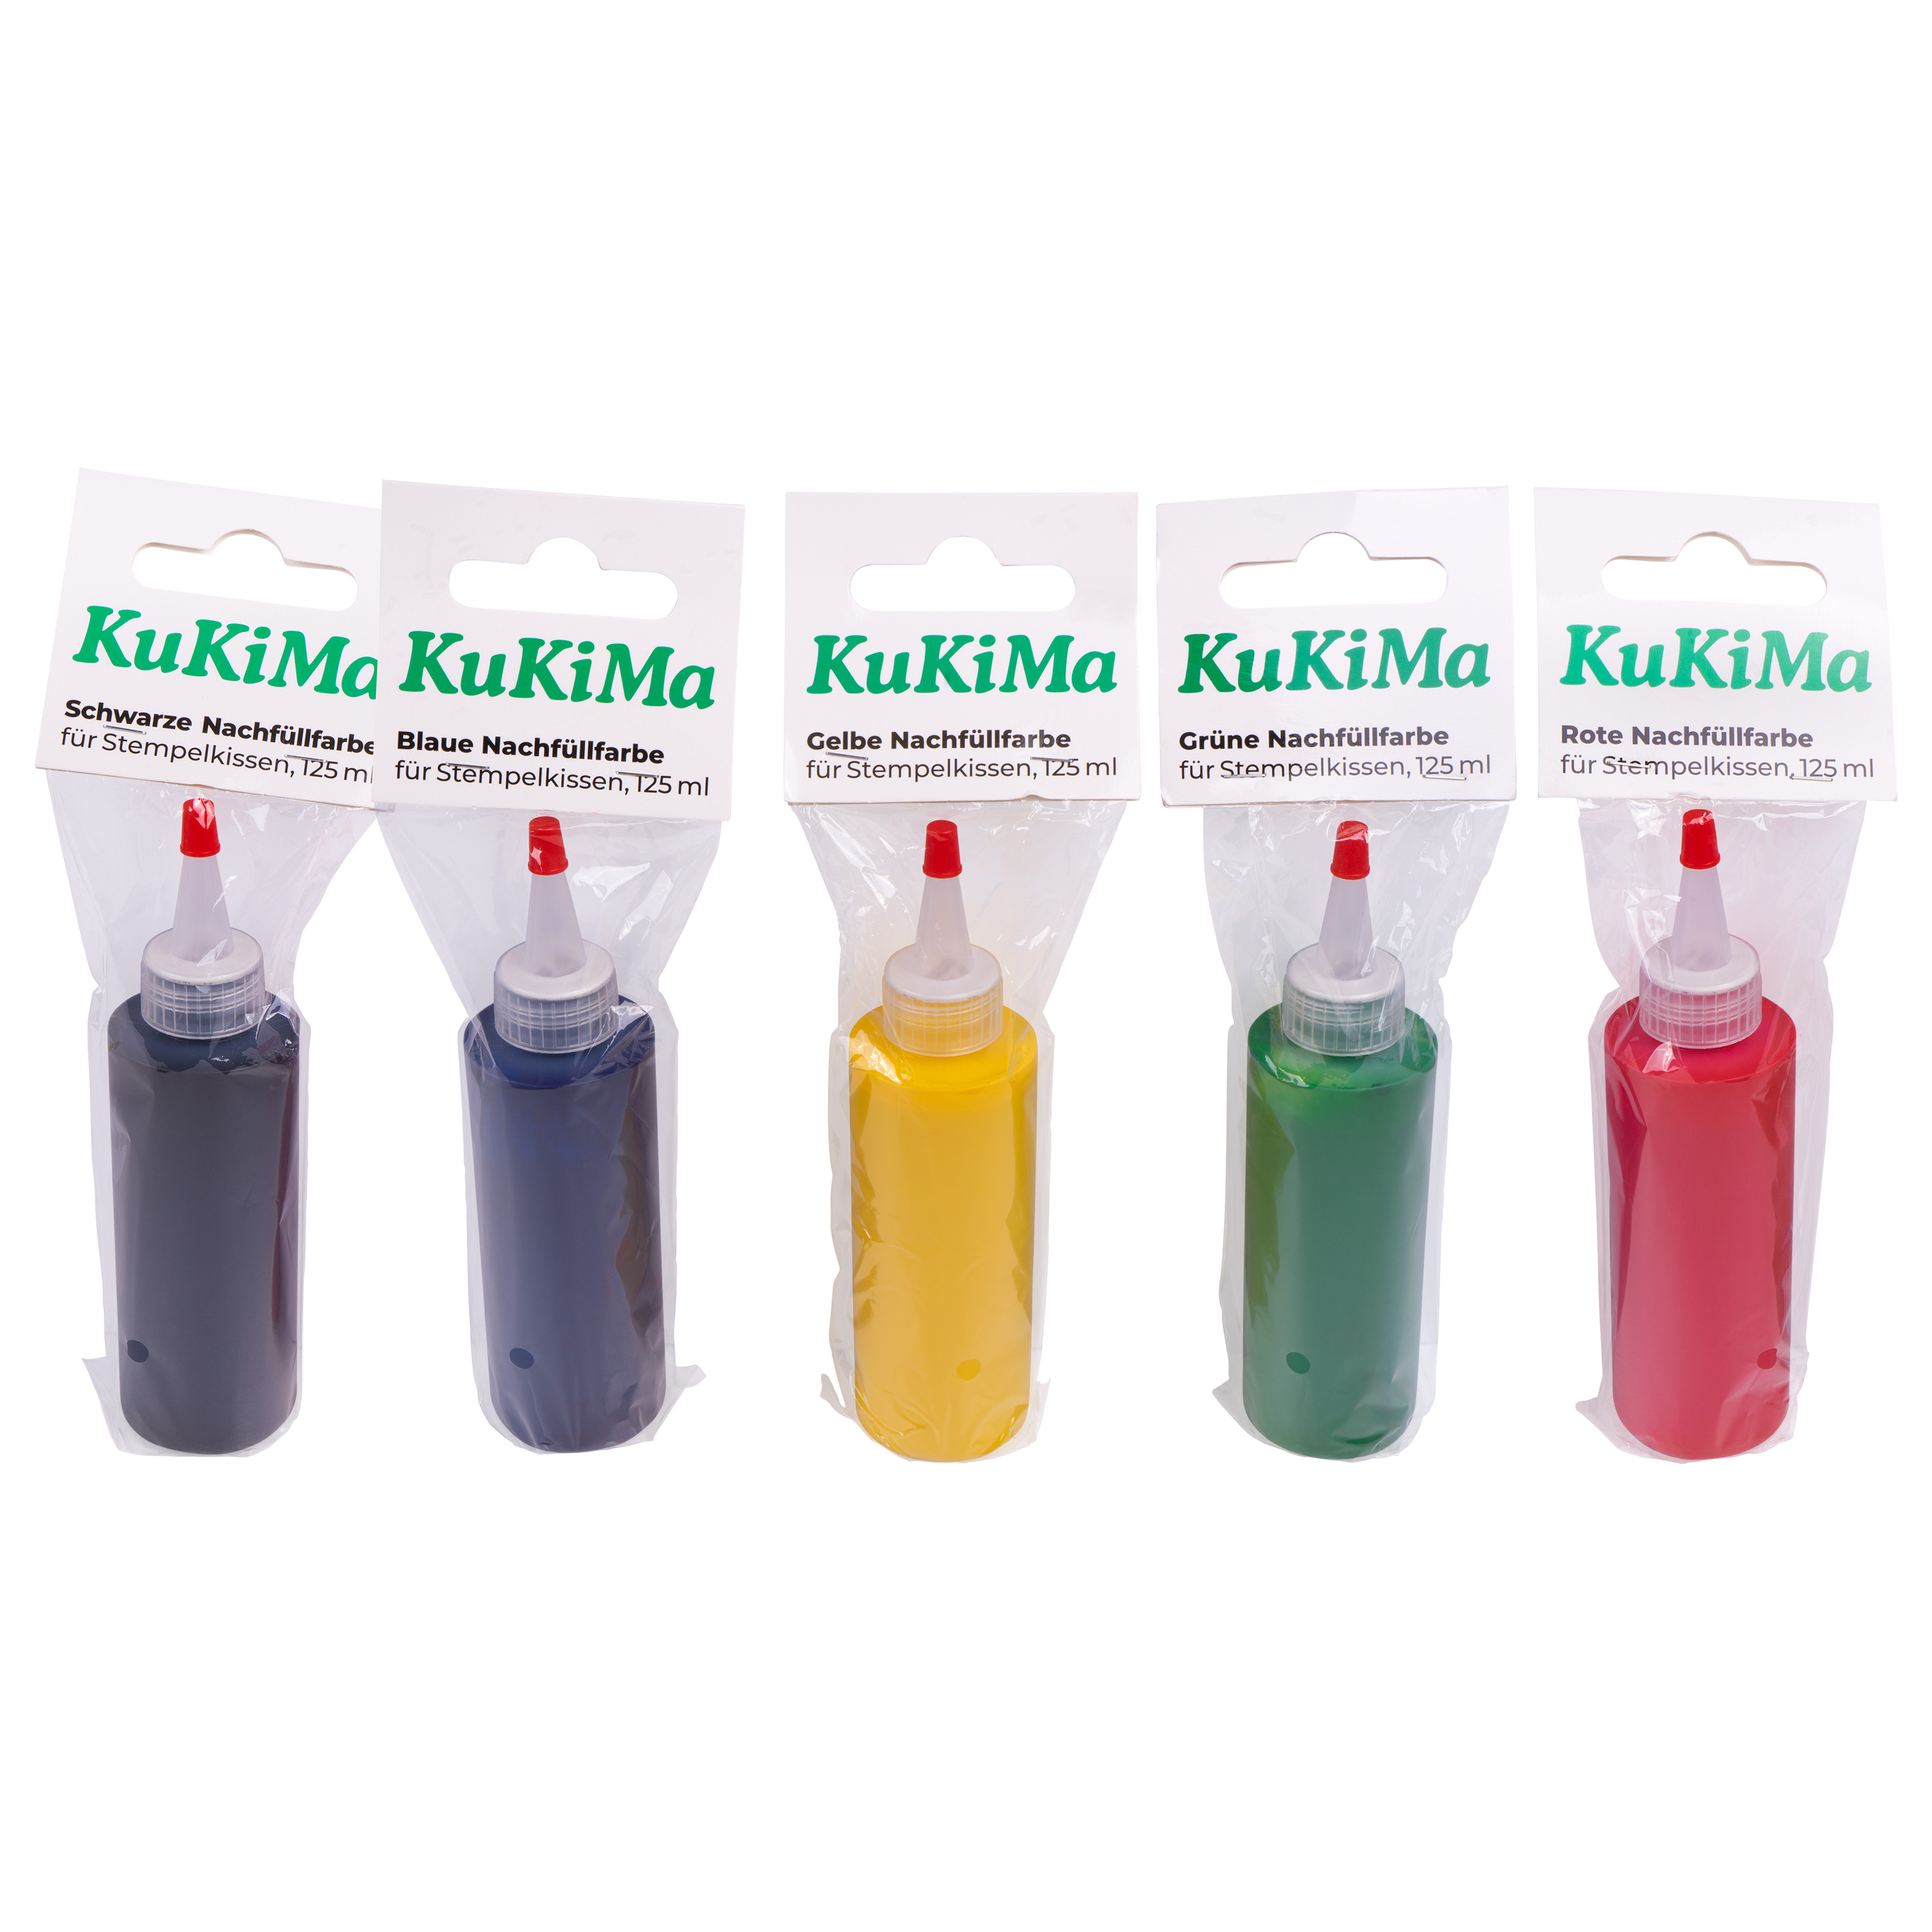 KuKiMa Rote Nachfüllfarbe für Stempelkissen, 125 ml